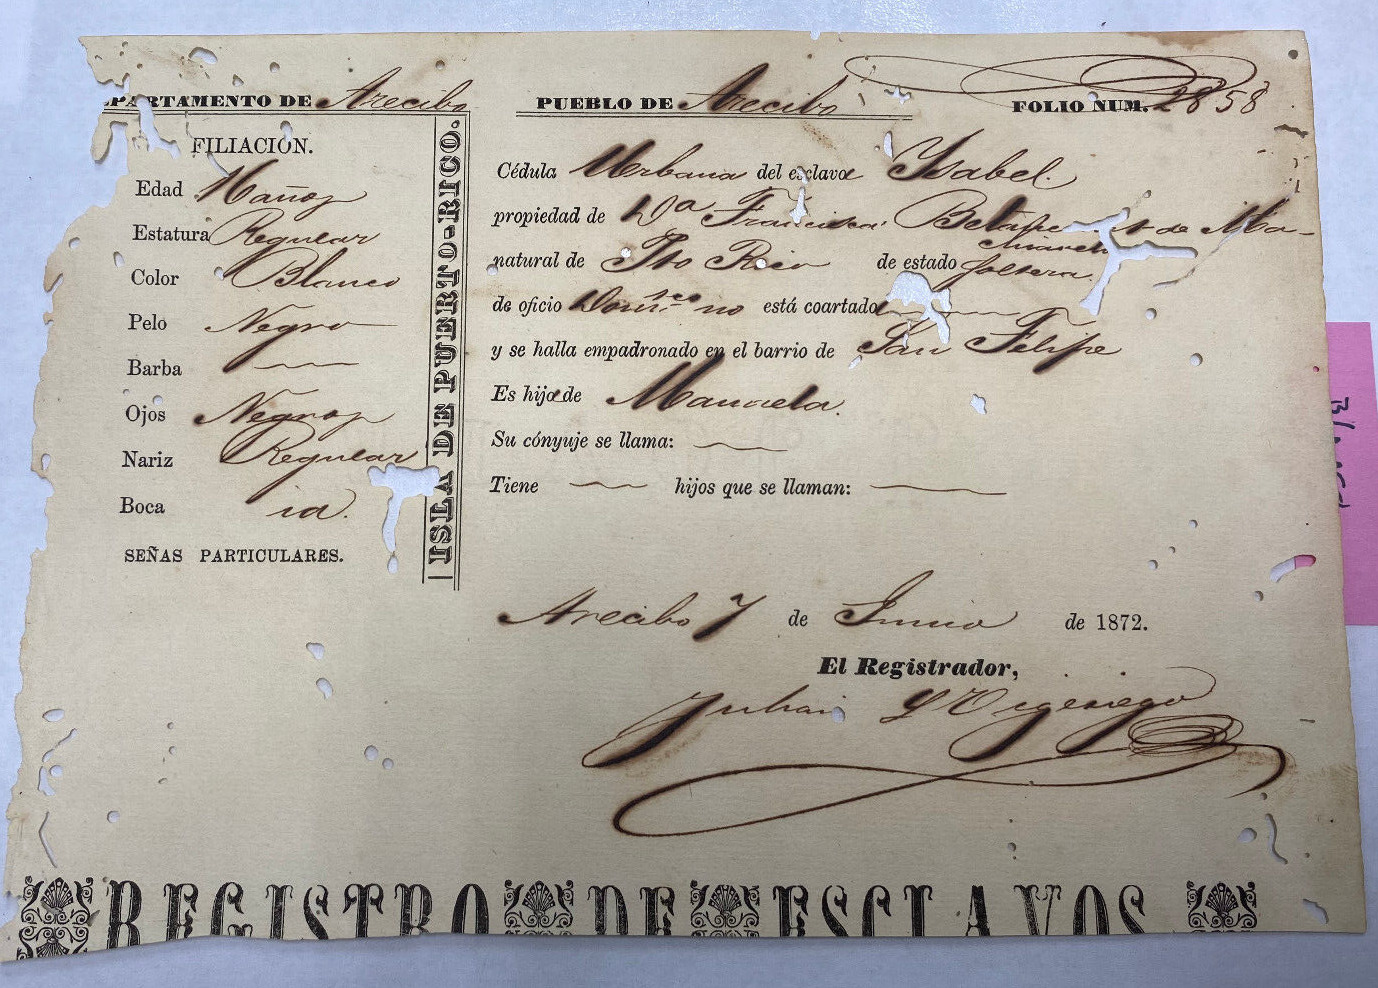 Puerto Rico, 1872, Registro Esclavo, Arecibo, Niña (Color-BLANCA), 16 años